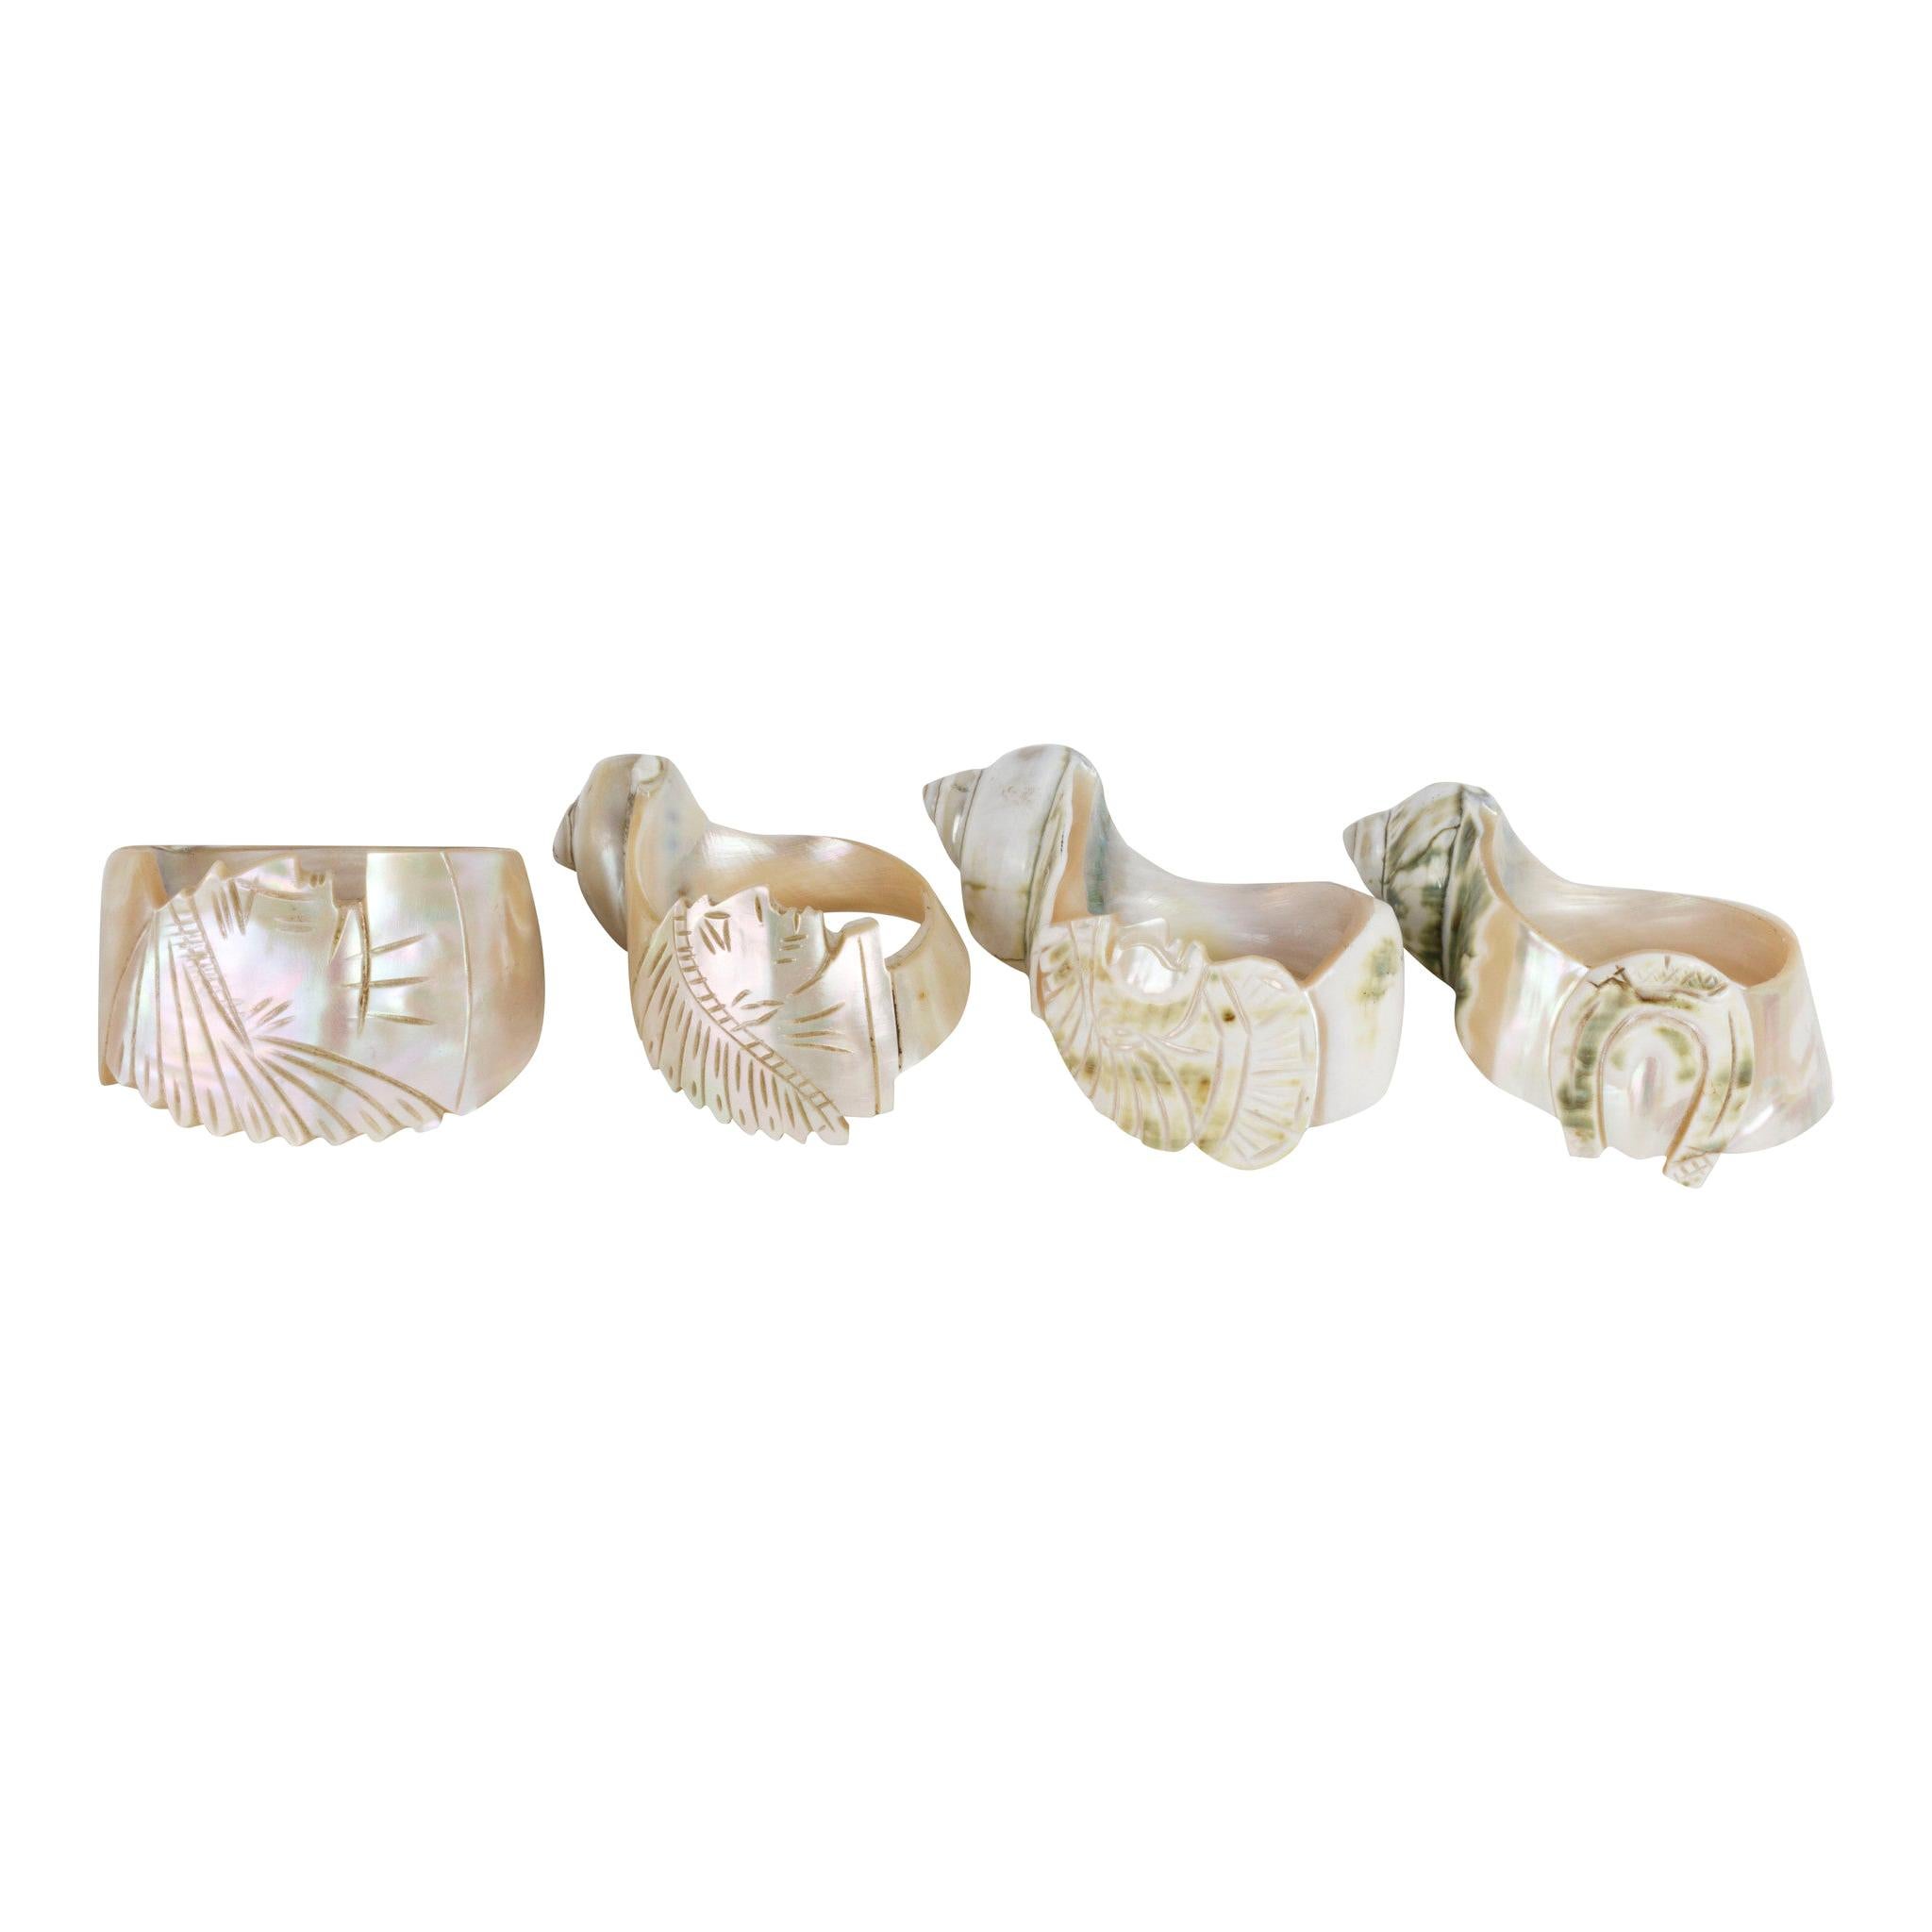 Collection de 4 anneaux de serviette en forme de conque sculptés des années 1890